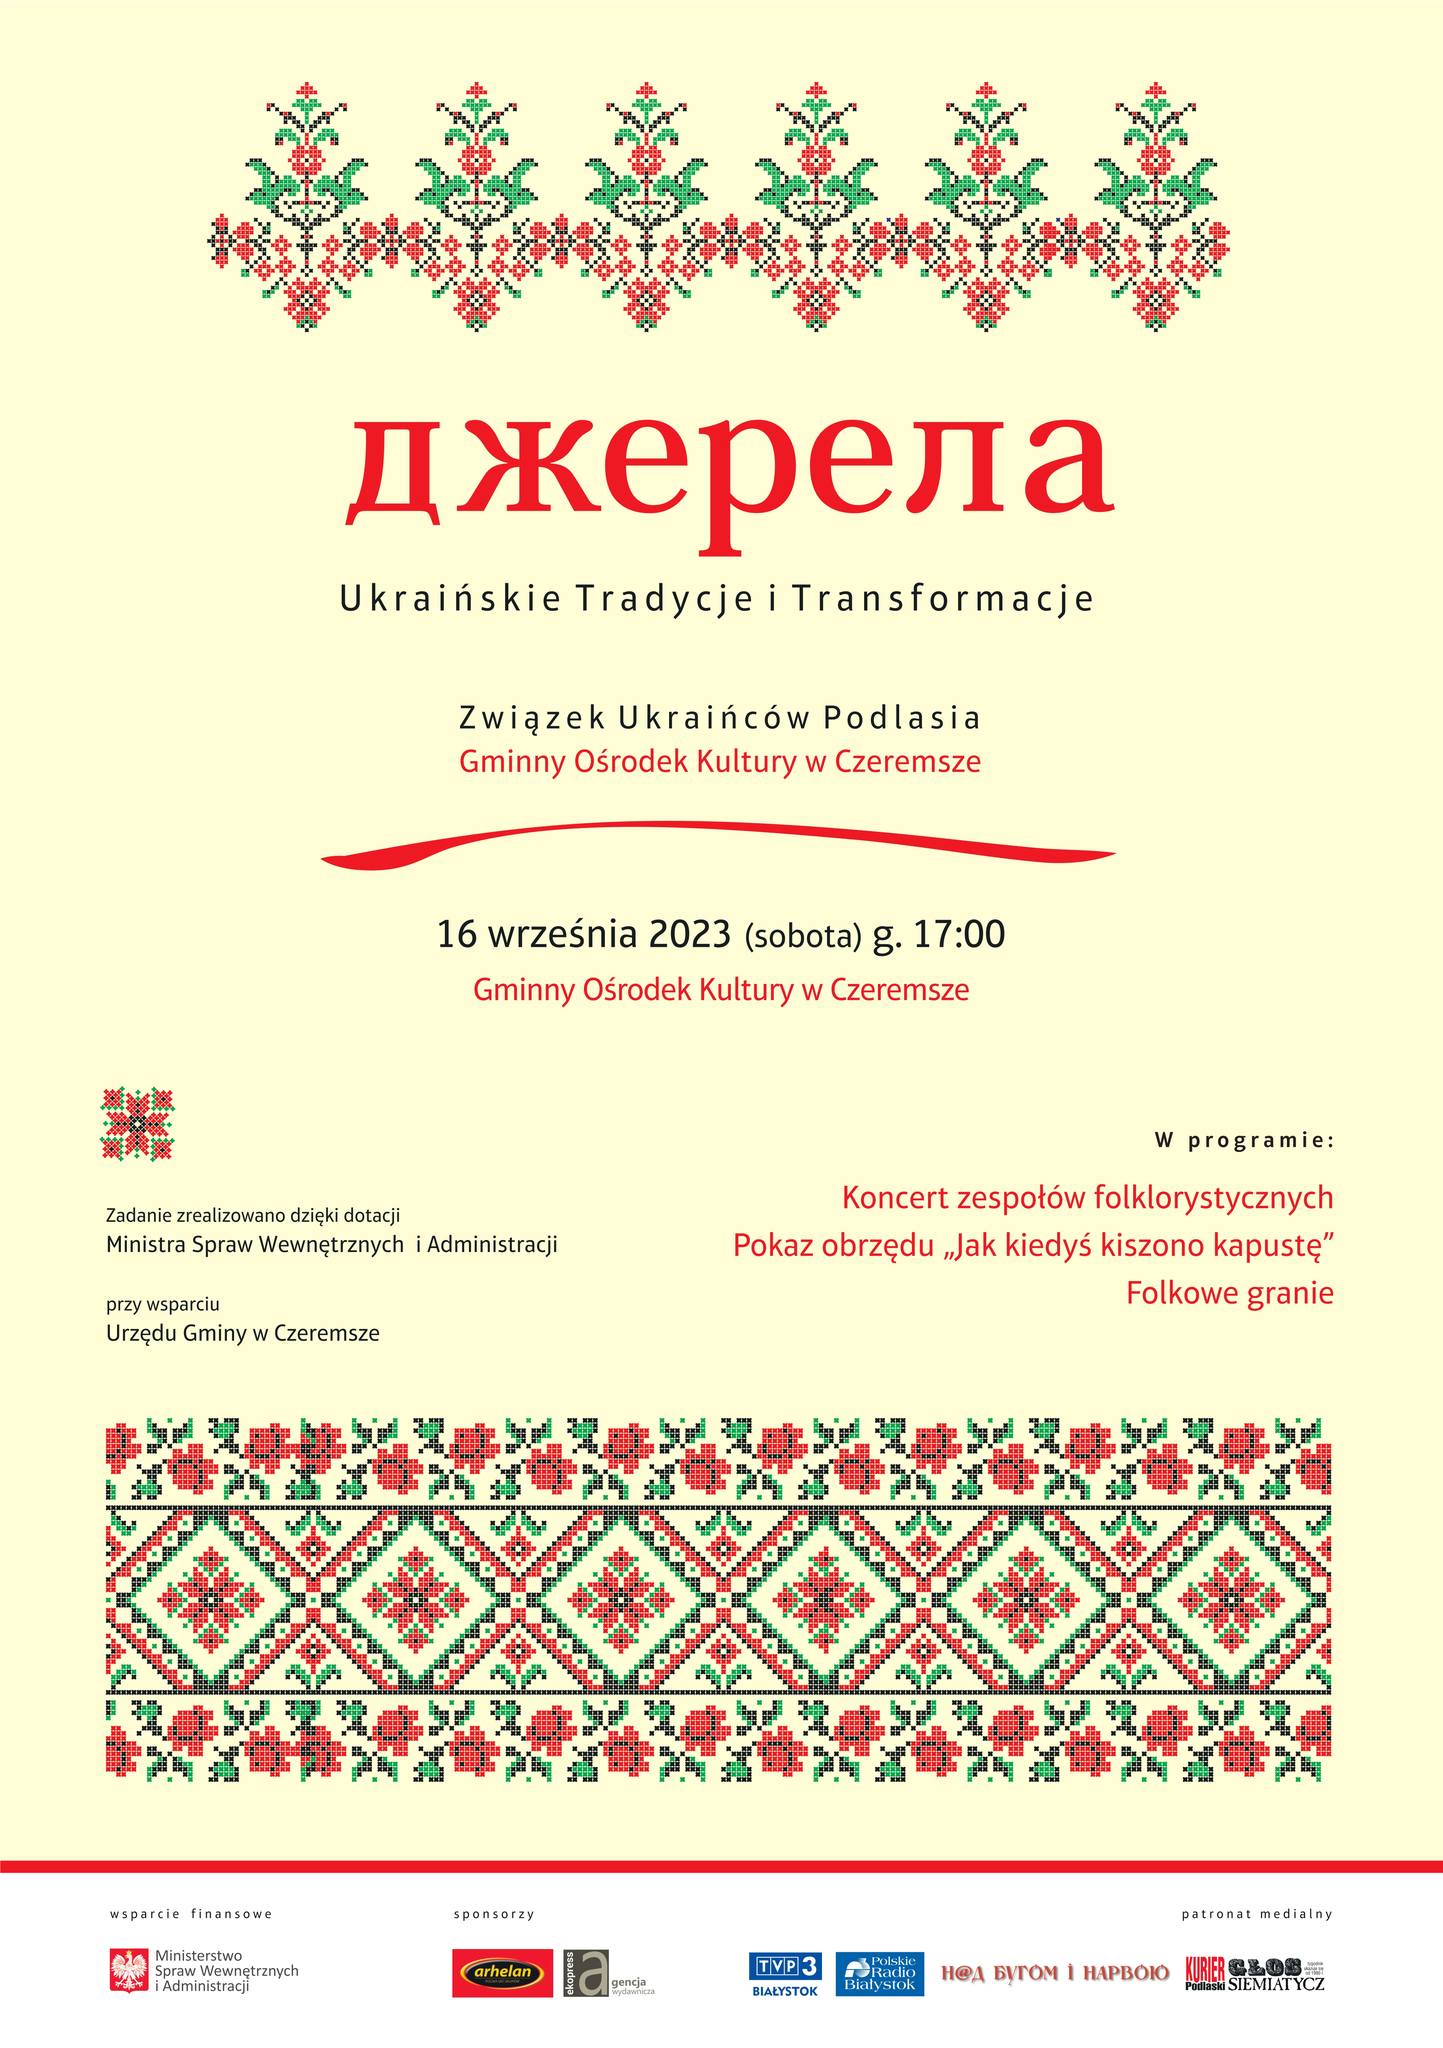 “Джерела – українські традиції і трансформації”